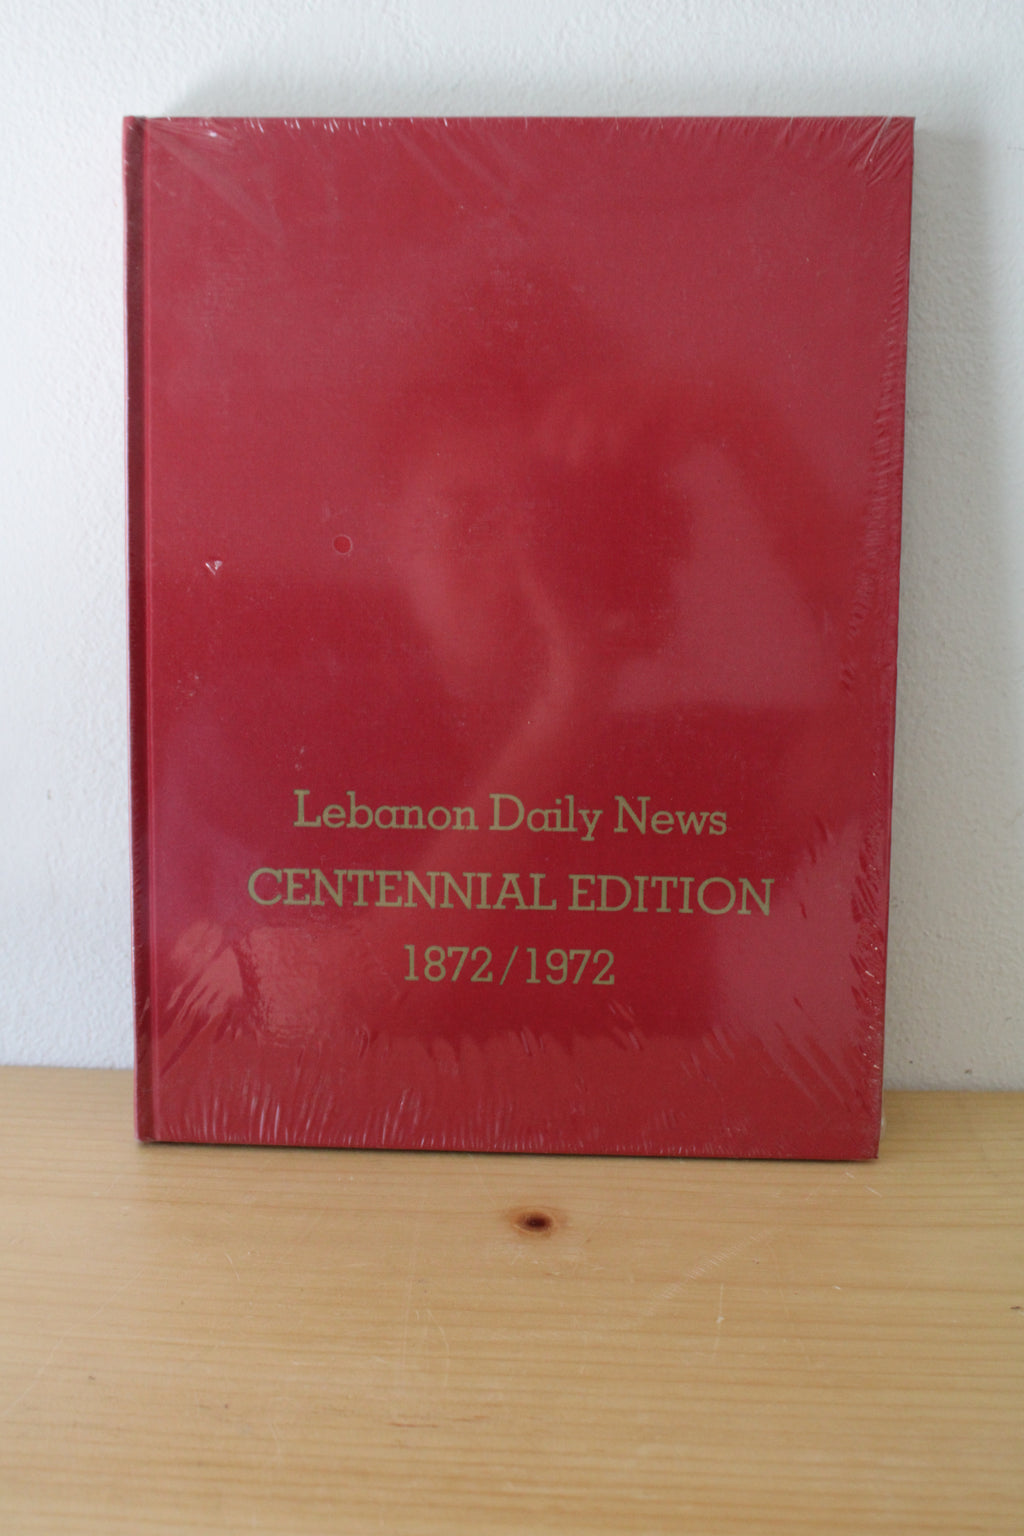 Lebanon Daily News Centennial Edition 1872/1972